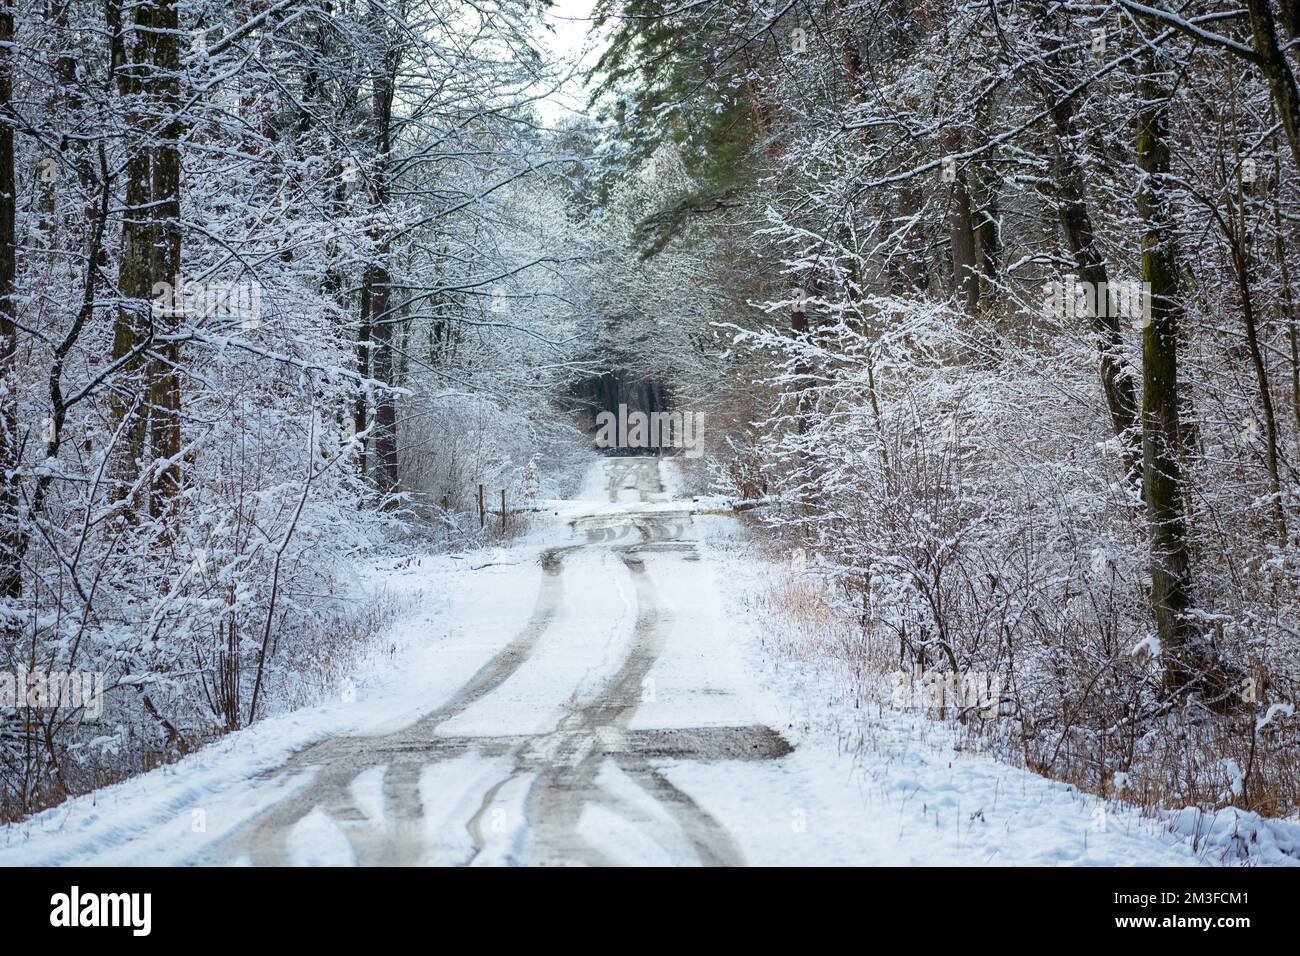 Pistes de voiture sur la route enneigée dans la forêt d'hiver Banque D'Images